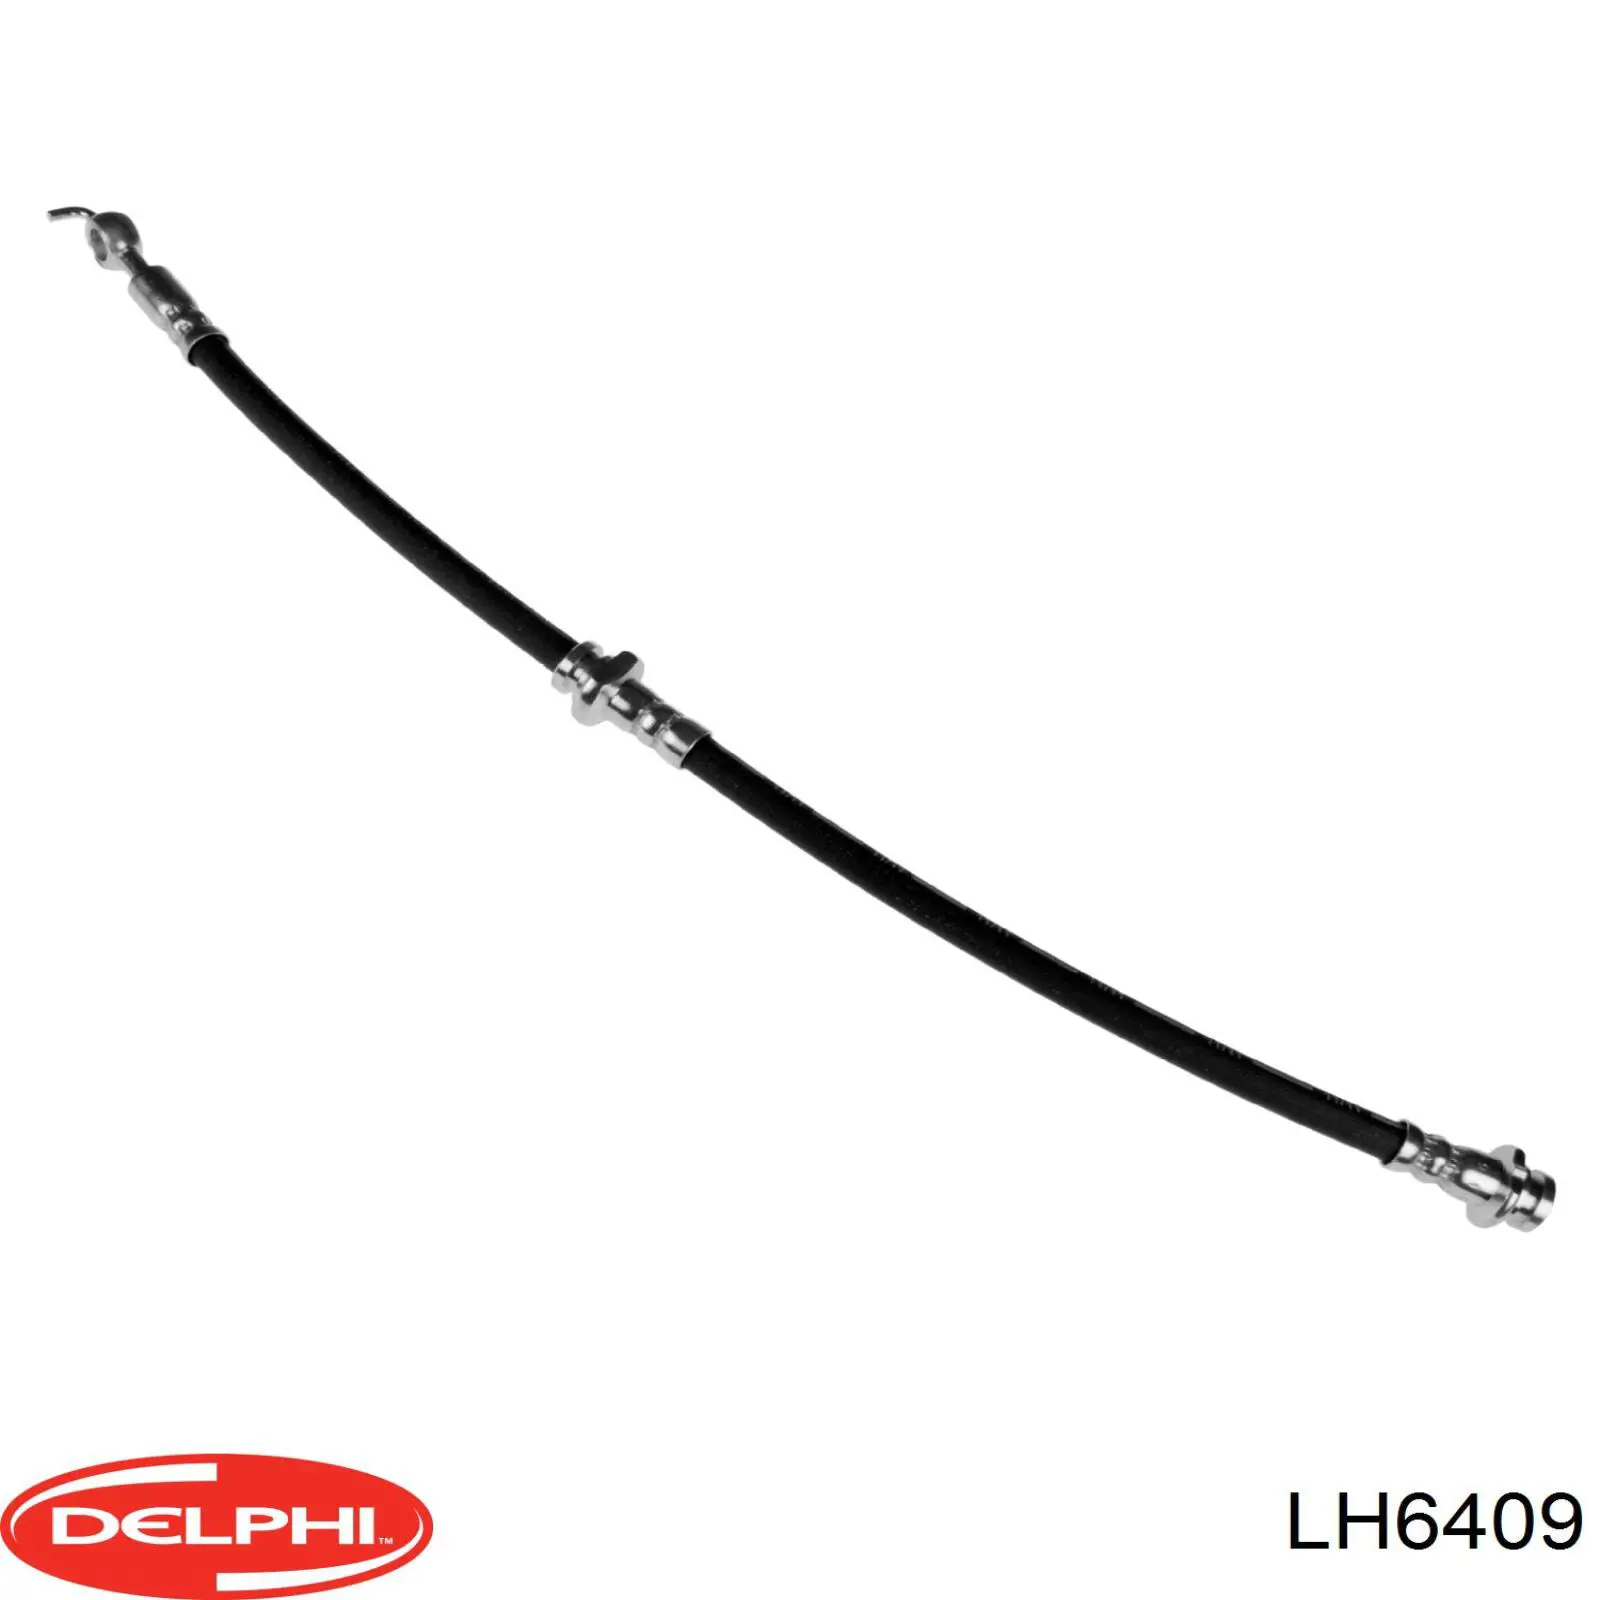 LH6409 Delphi latiguillos de freno delantero izquierdo